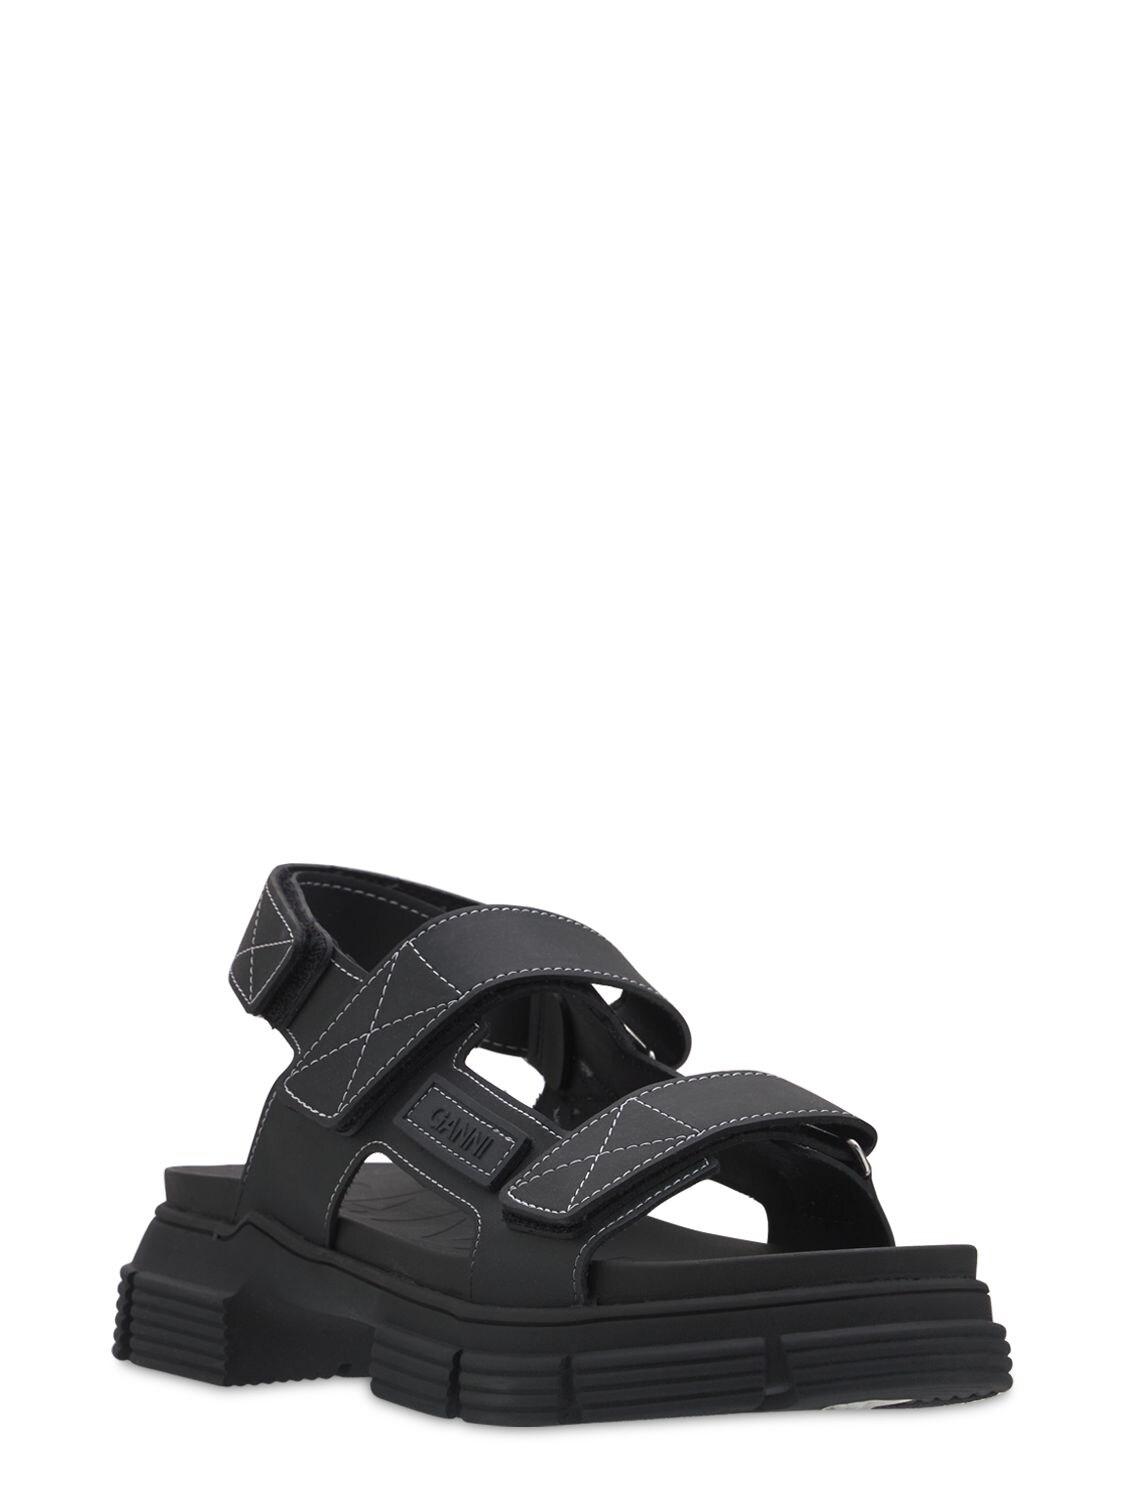 Ganni 45mm Rubber Trek Sandals in Black | Lyst